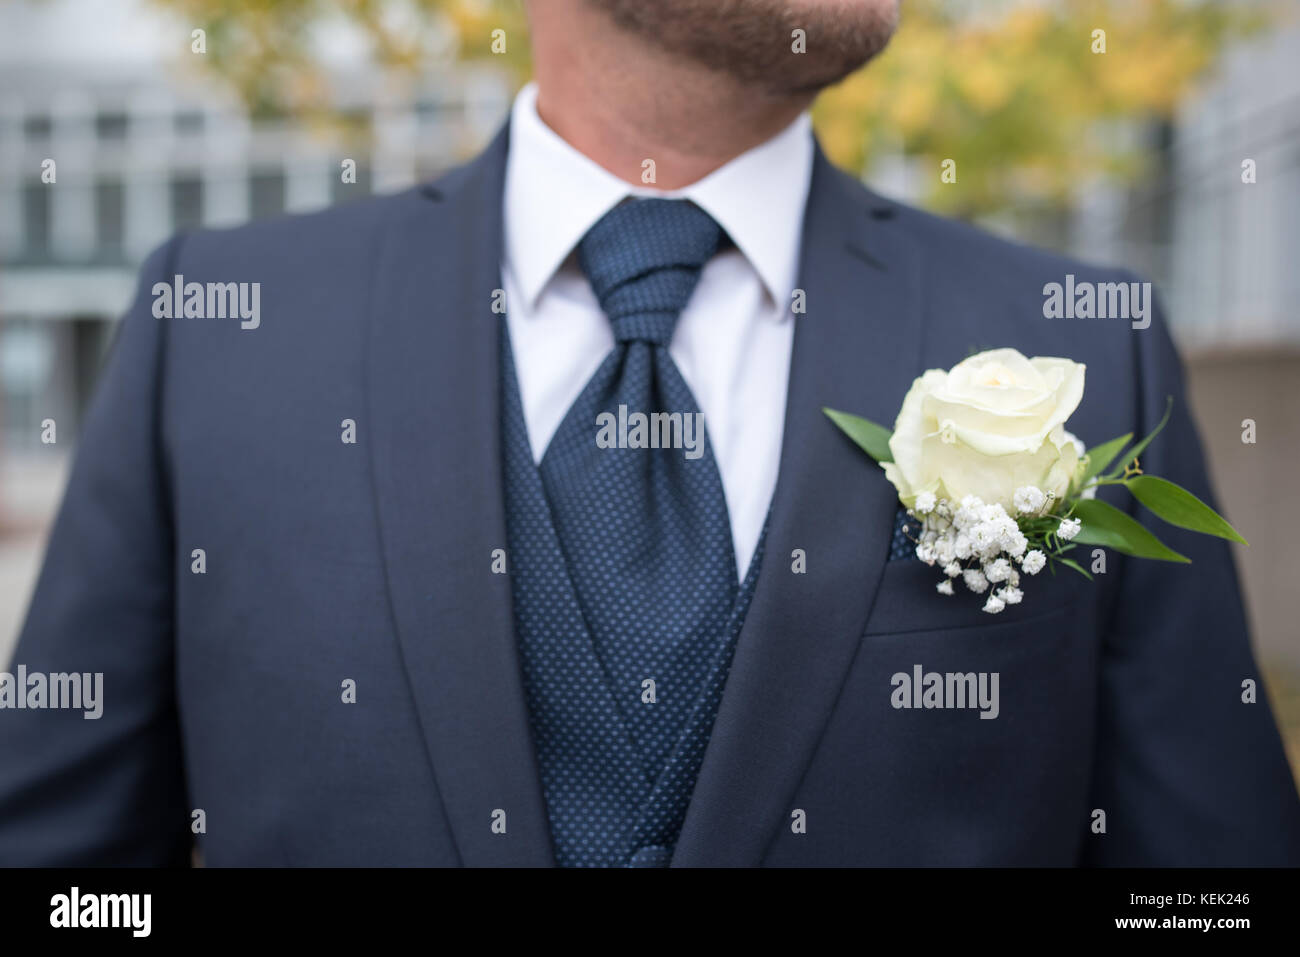 Symbolisch, Symbolbild Bräutigam, Groom. Blauer Anzug, blaue Krawatte, weißes Hemd, blaue Weste, Boutonniere, Ansteckblume für den Bräutigam . ,  (Pho Stock Photo